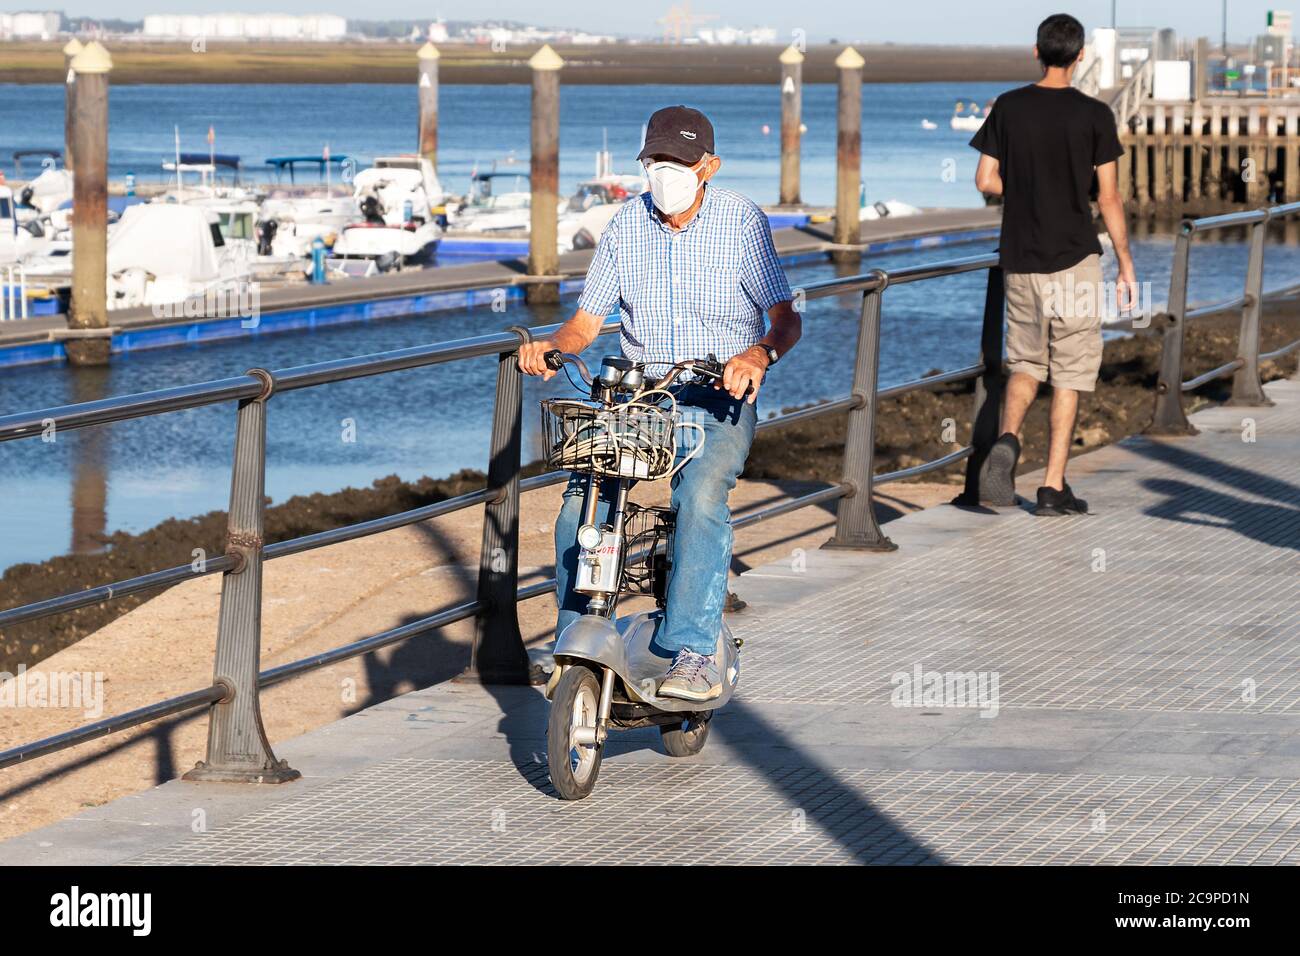 Punta Umbría, Huelva, España - 10 de julio de 2020: Un anciano que monta un scooter eléctrico por la acera con una máscara protectora. Foto de stock